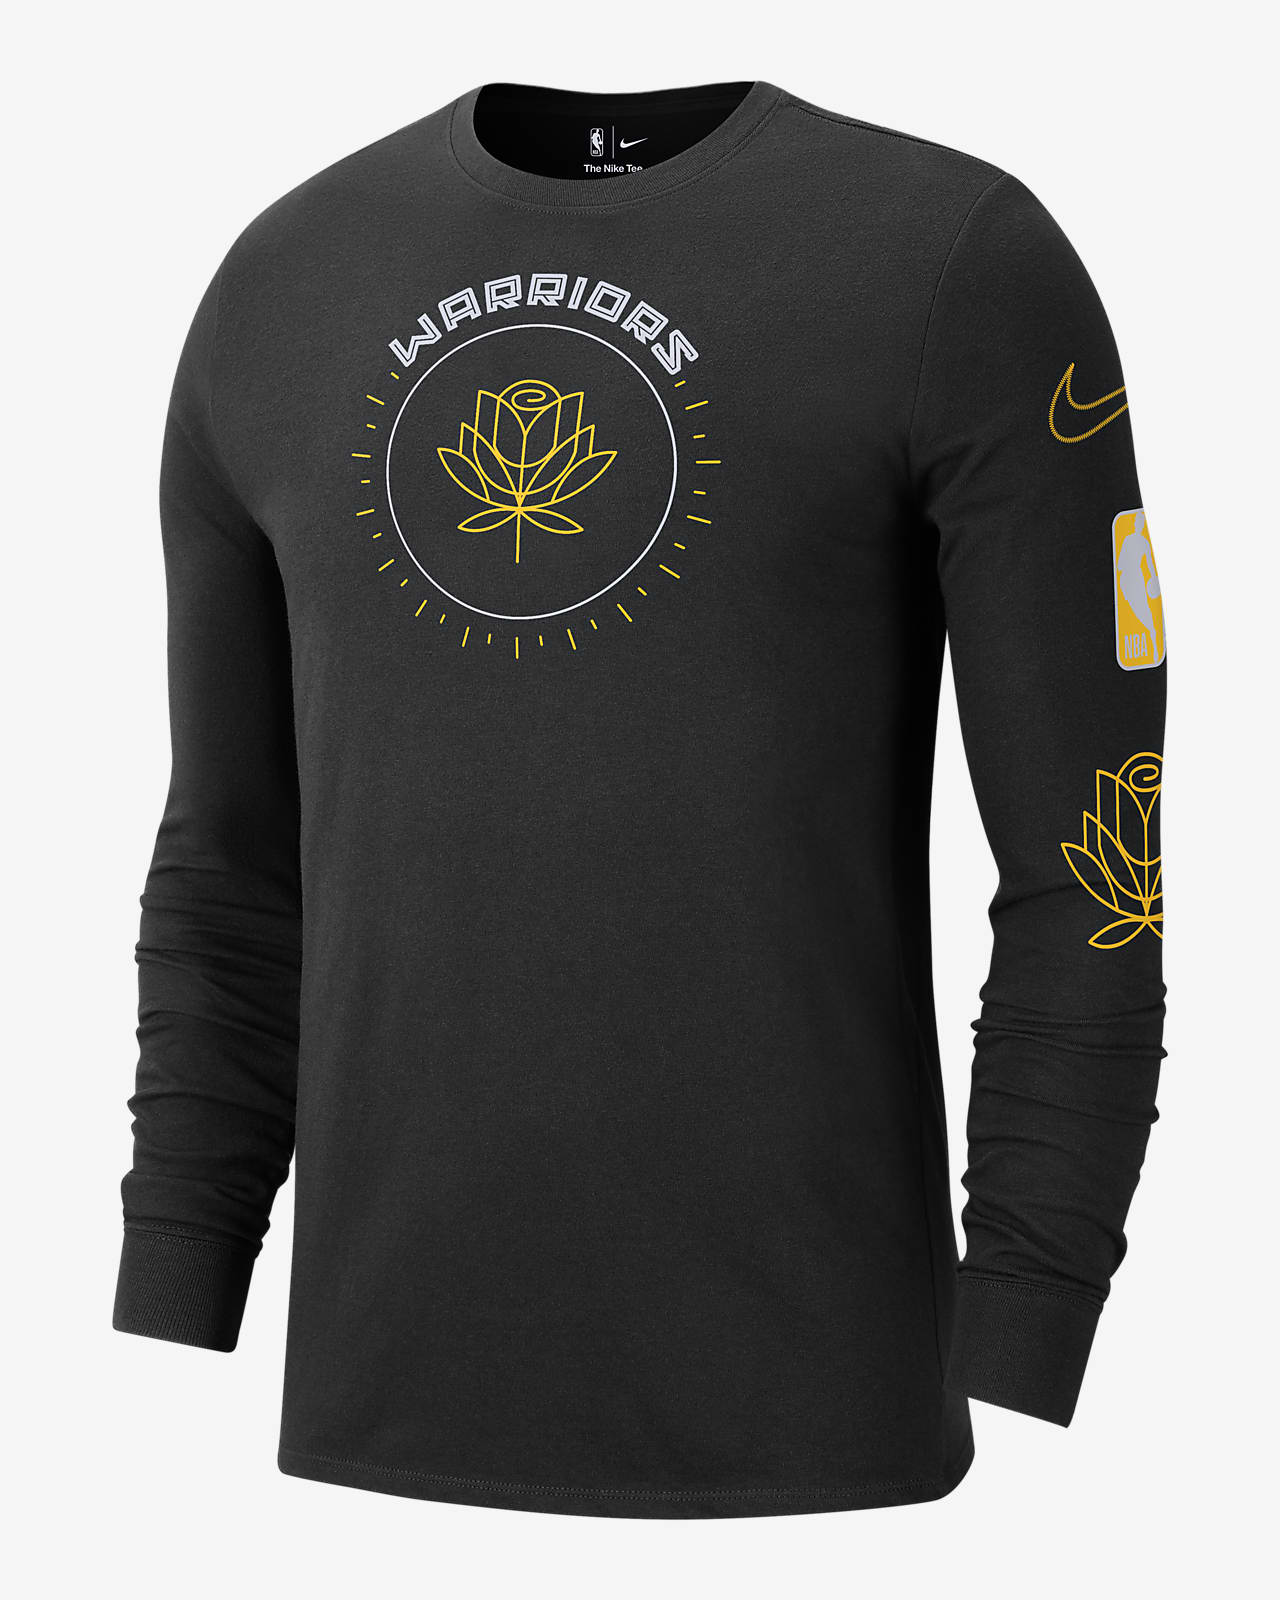 Golden Warriors City Edition Nike NBA Long-Sleeve T-Shirt.